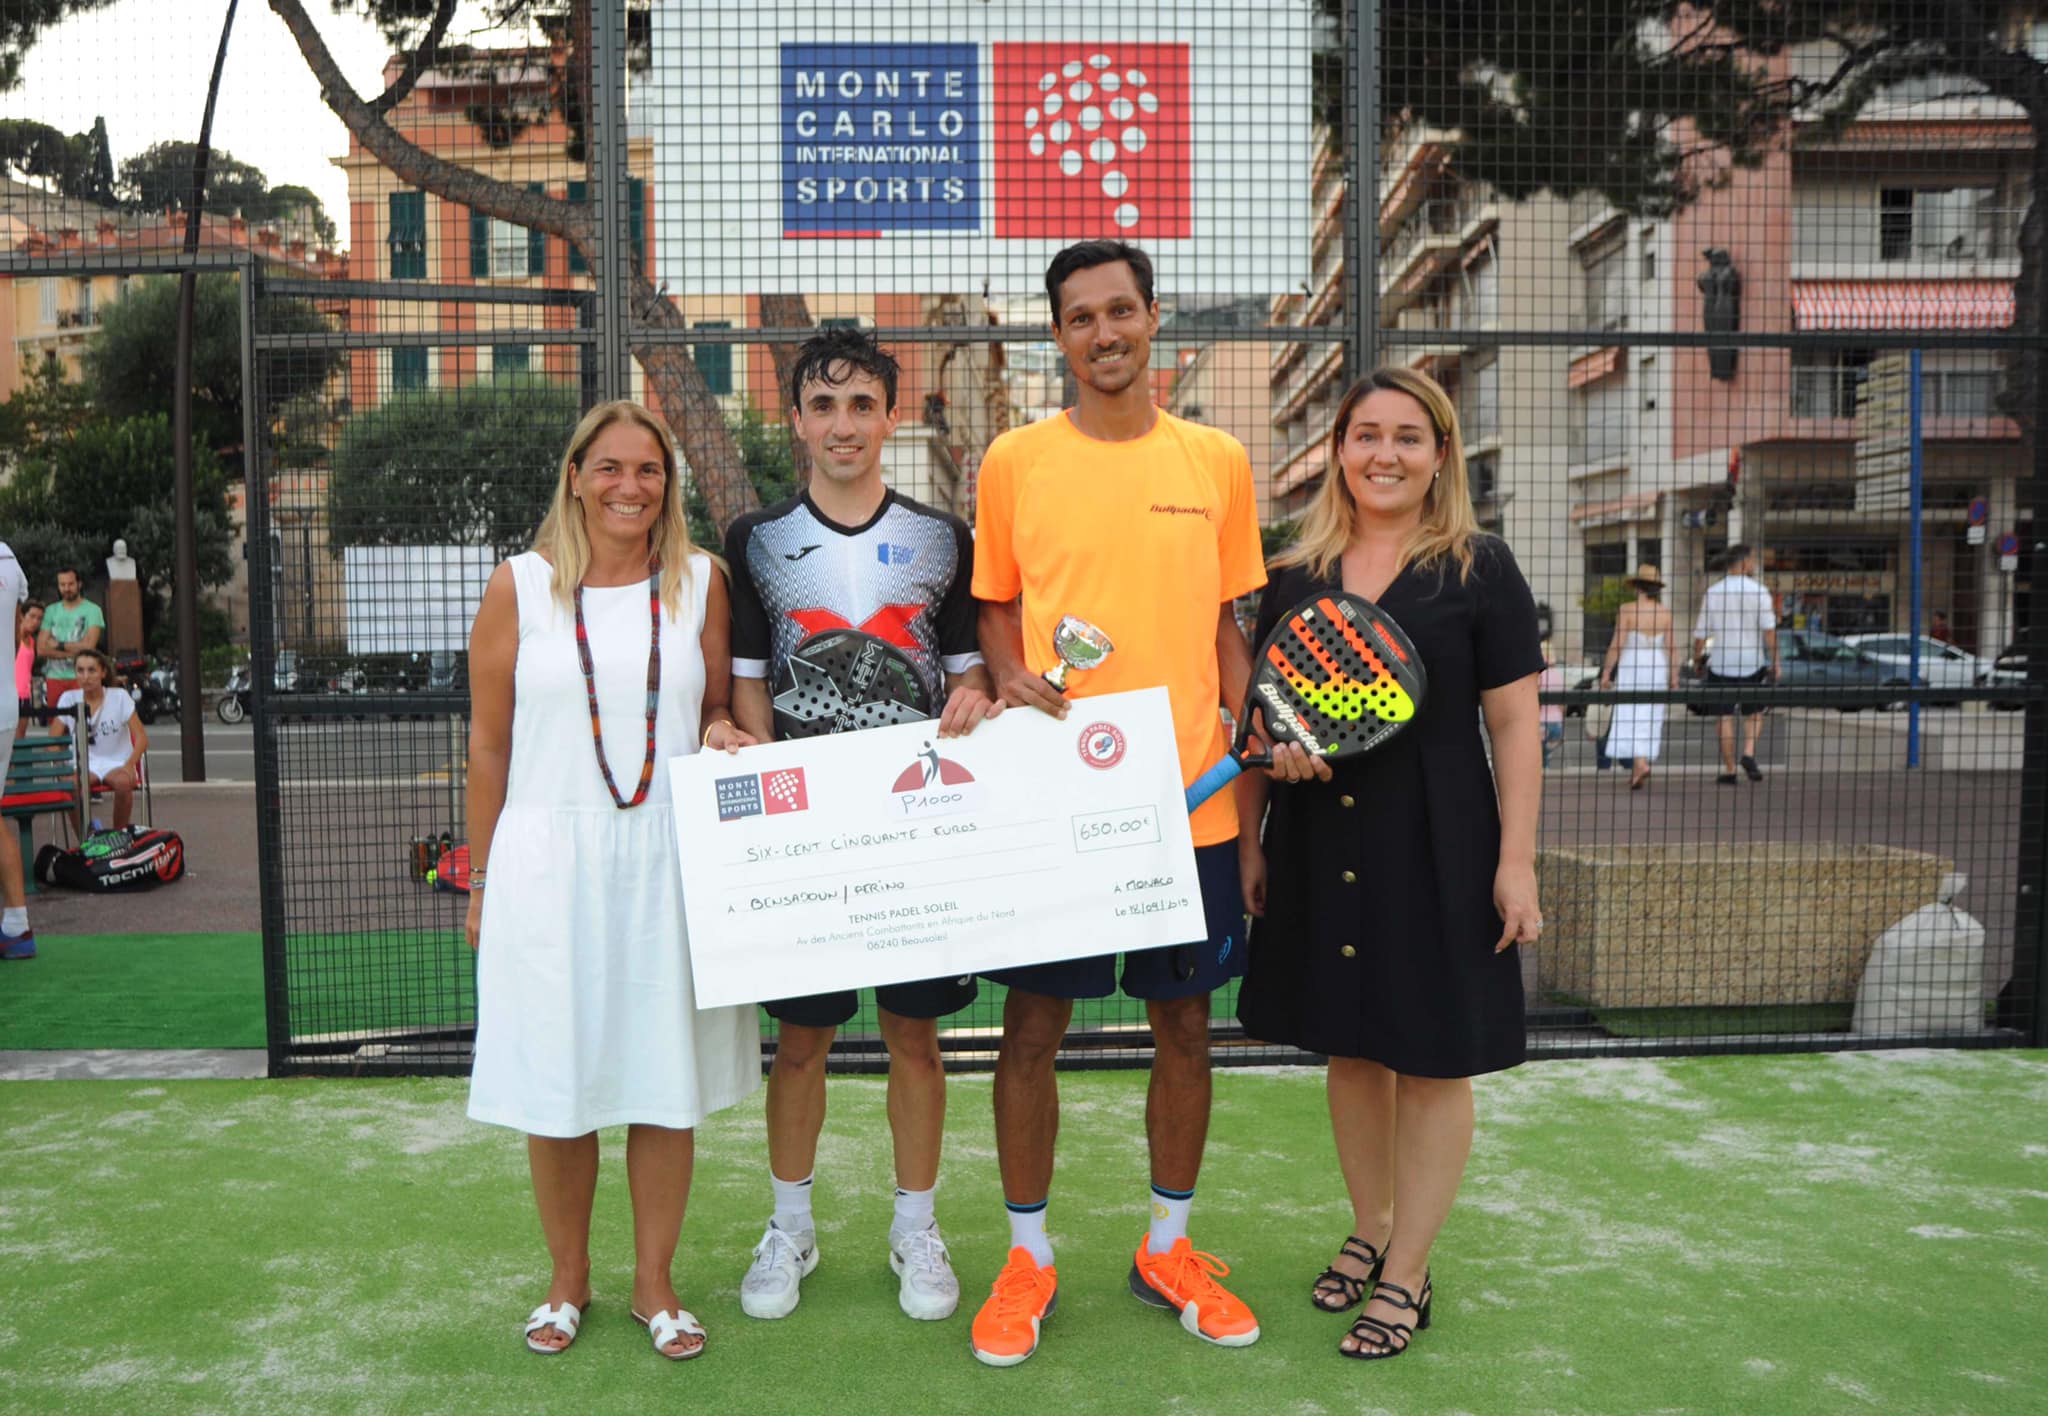 Zwycięstwo Bensadoun / Perino w Open Tennis Padel Słońce